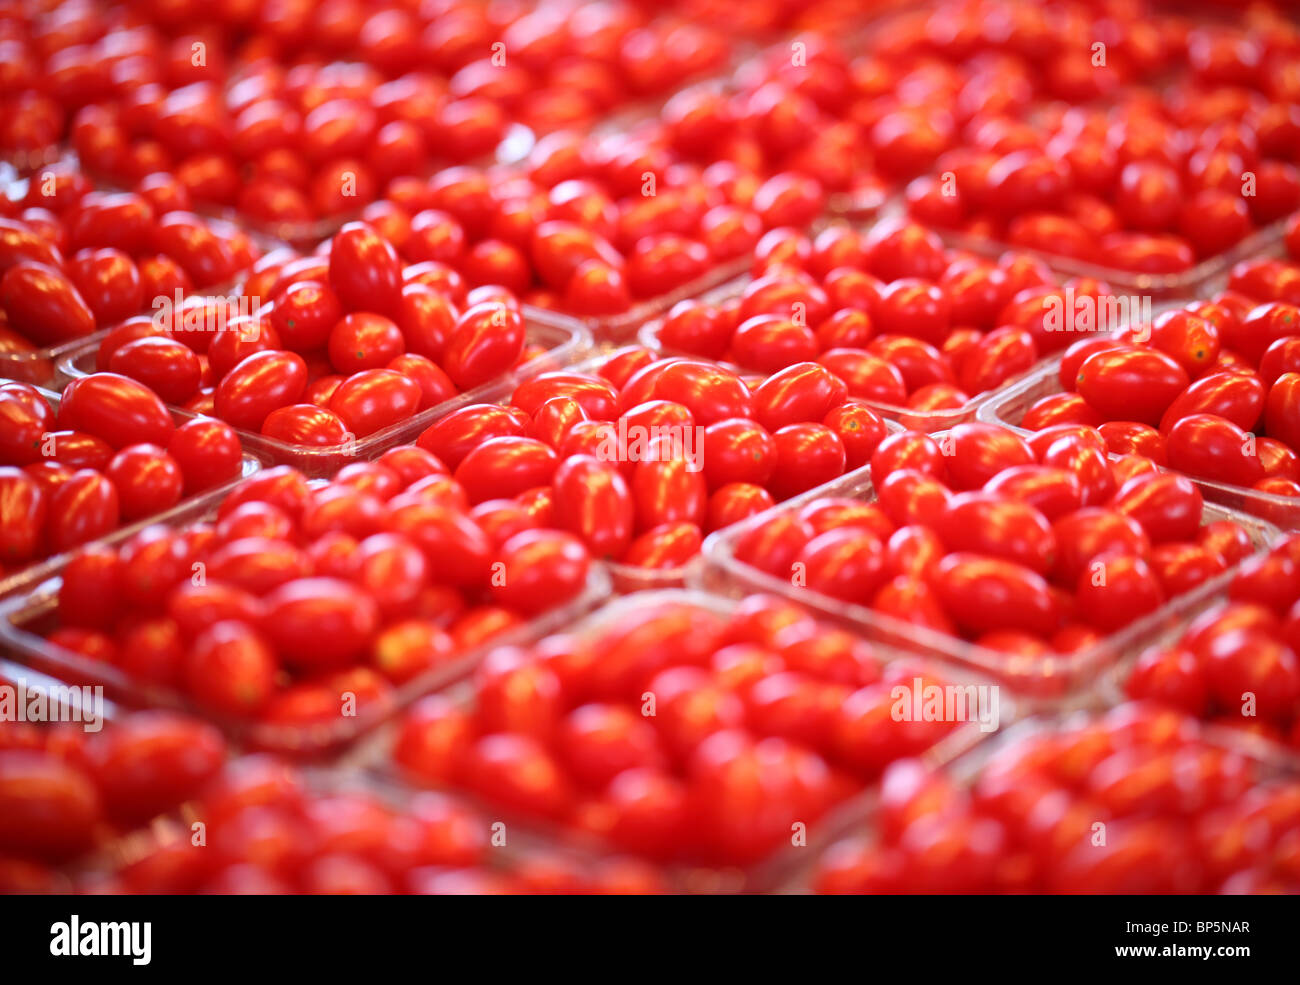 Una collezione di vassoi con nuovo mercato agricolo il rosso di pomodori ciliegini Foto Stock